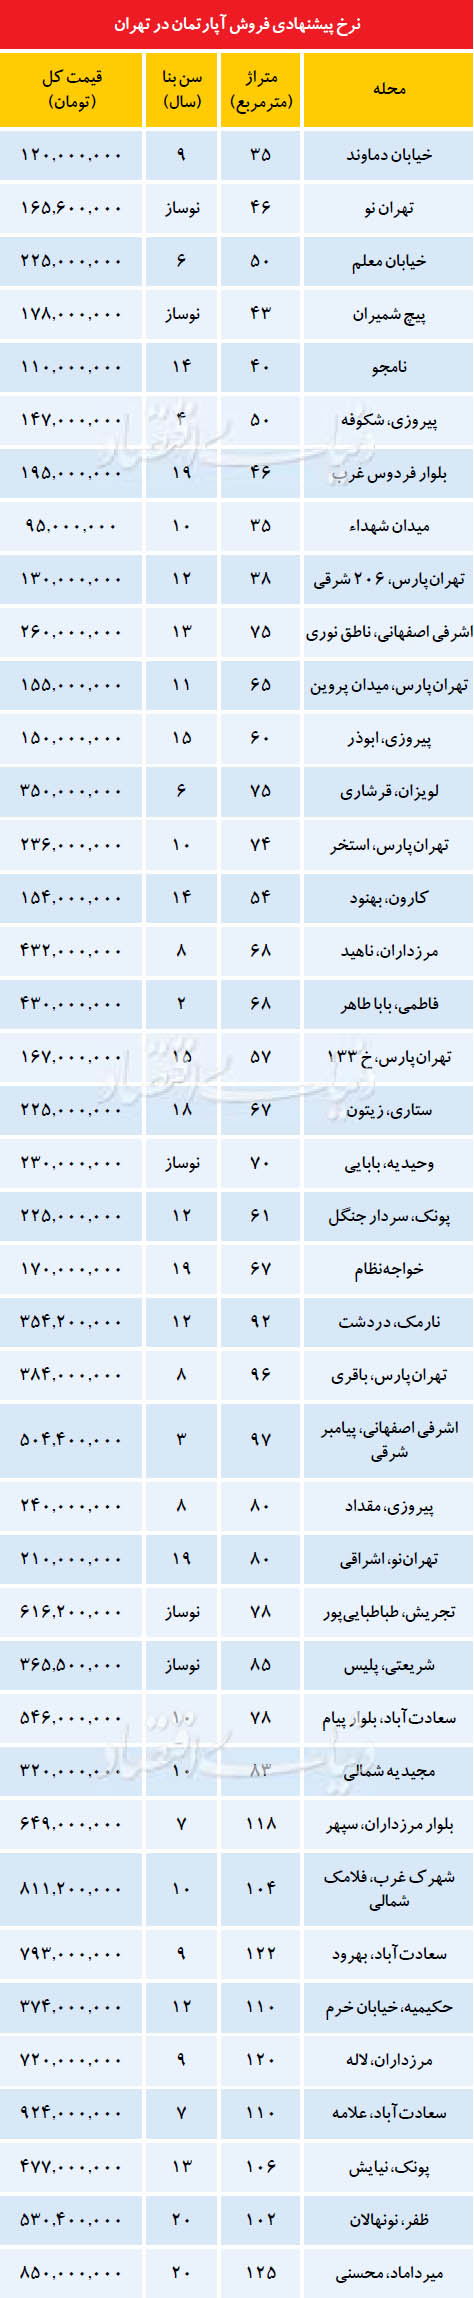 نرخ پیشنهادی فروش آپارتمان در تهران + جدول